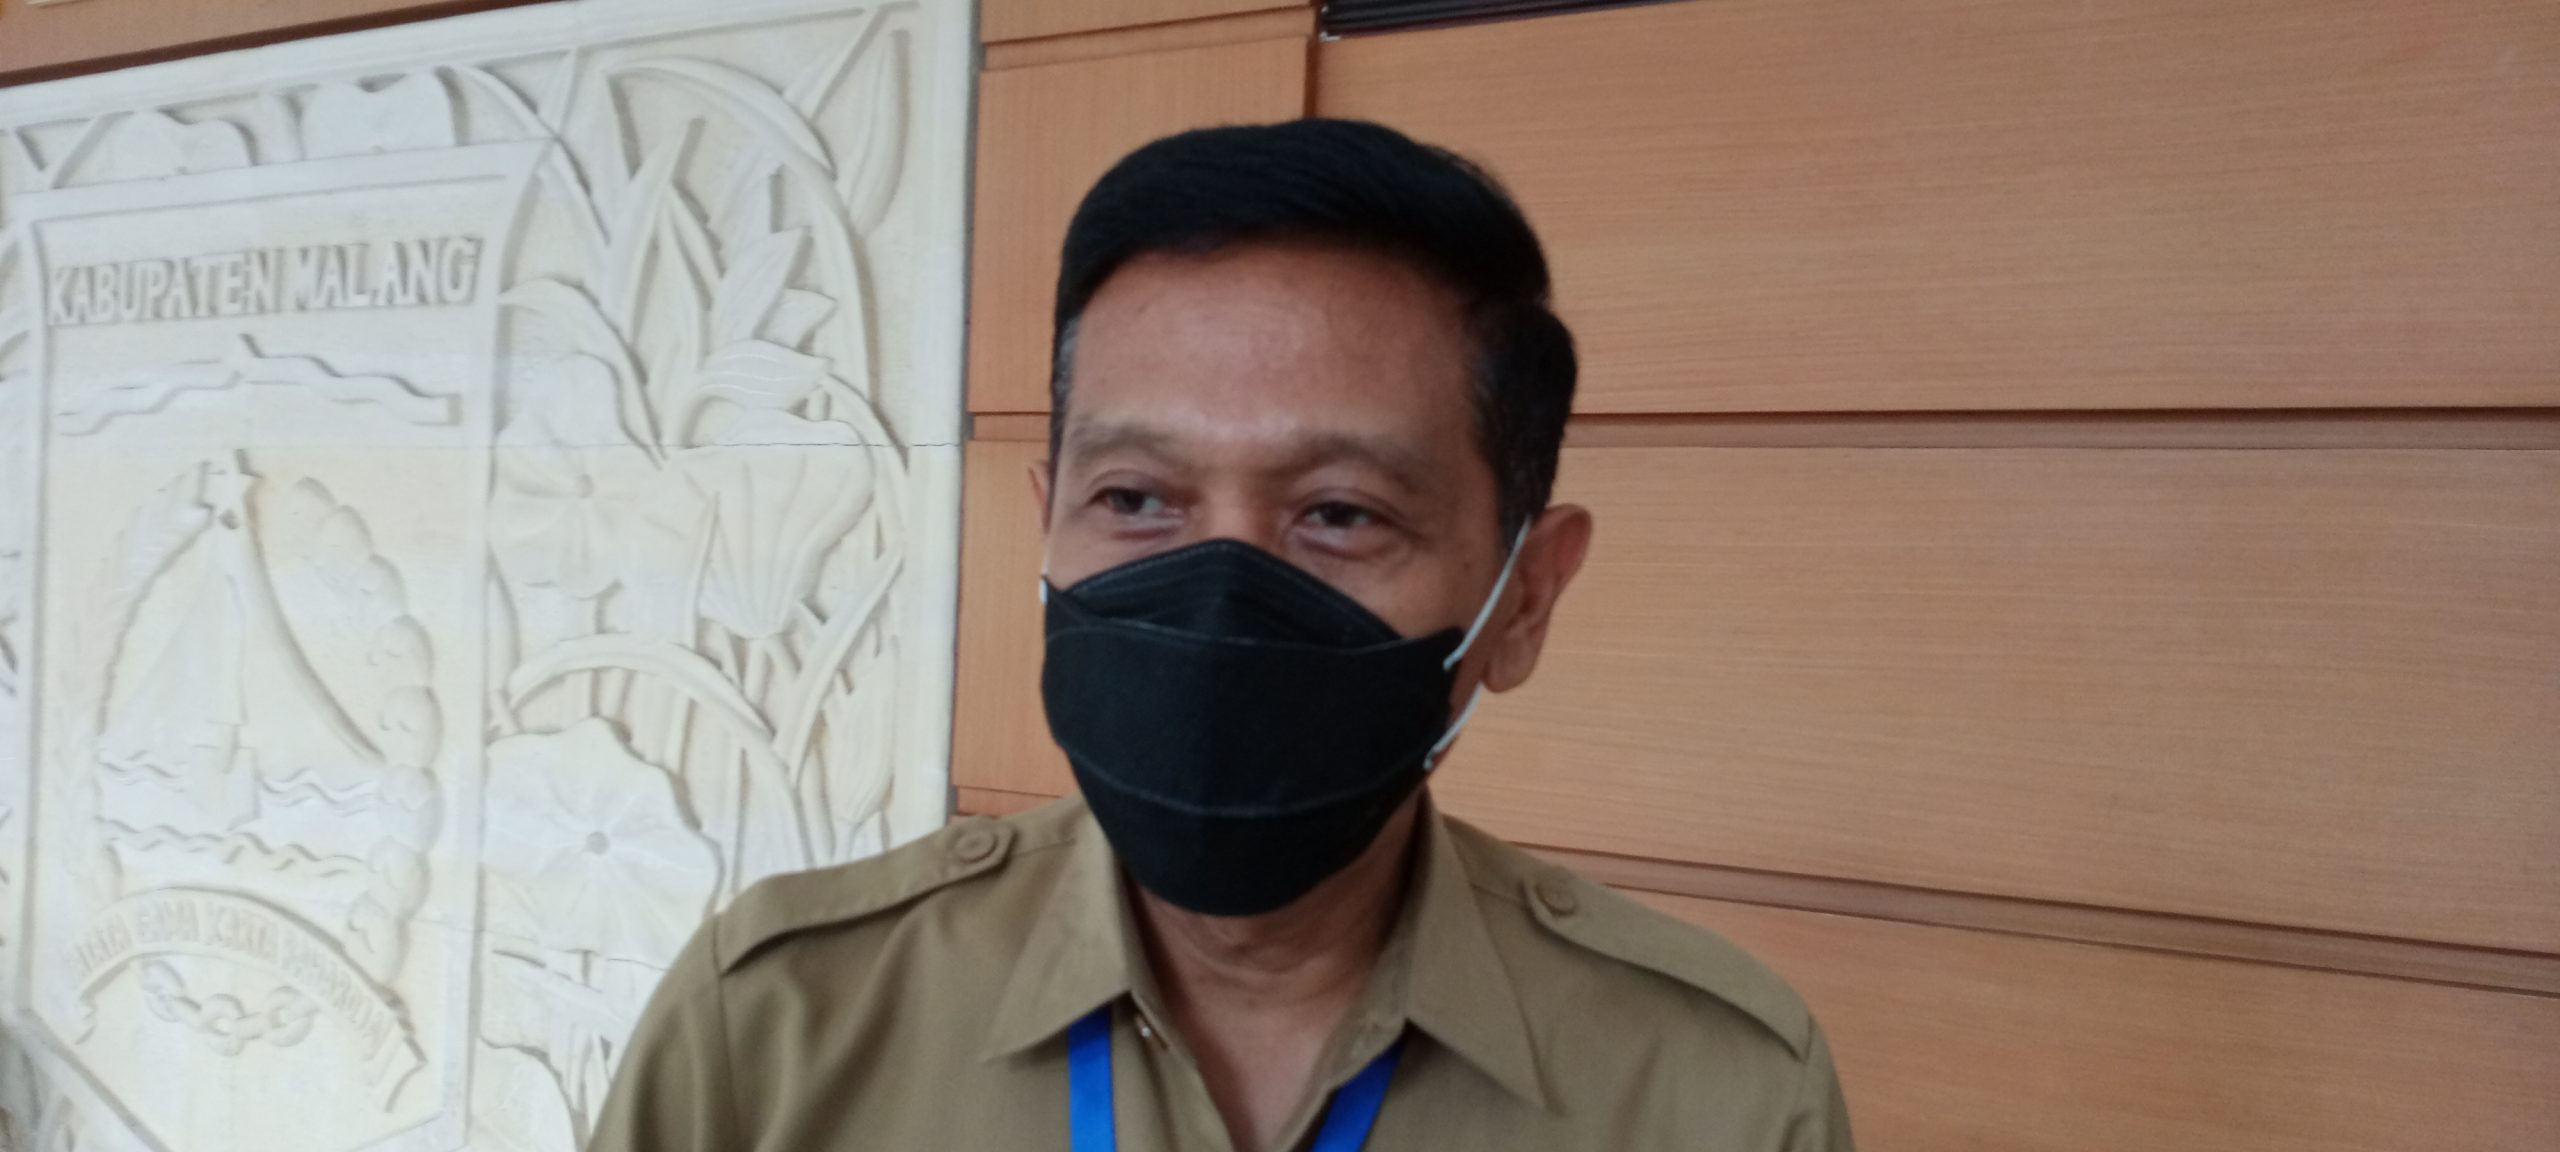 Pemberian Seremonial Vaksin Covid-19 di Kabupaten Malang Dijadwalkan Akhir Januari